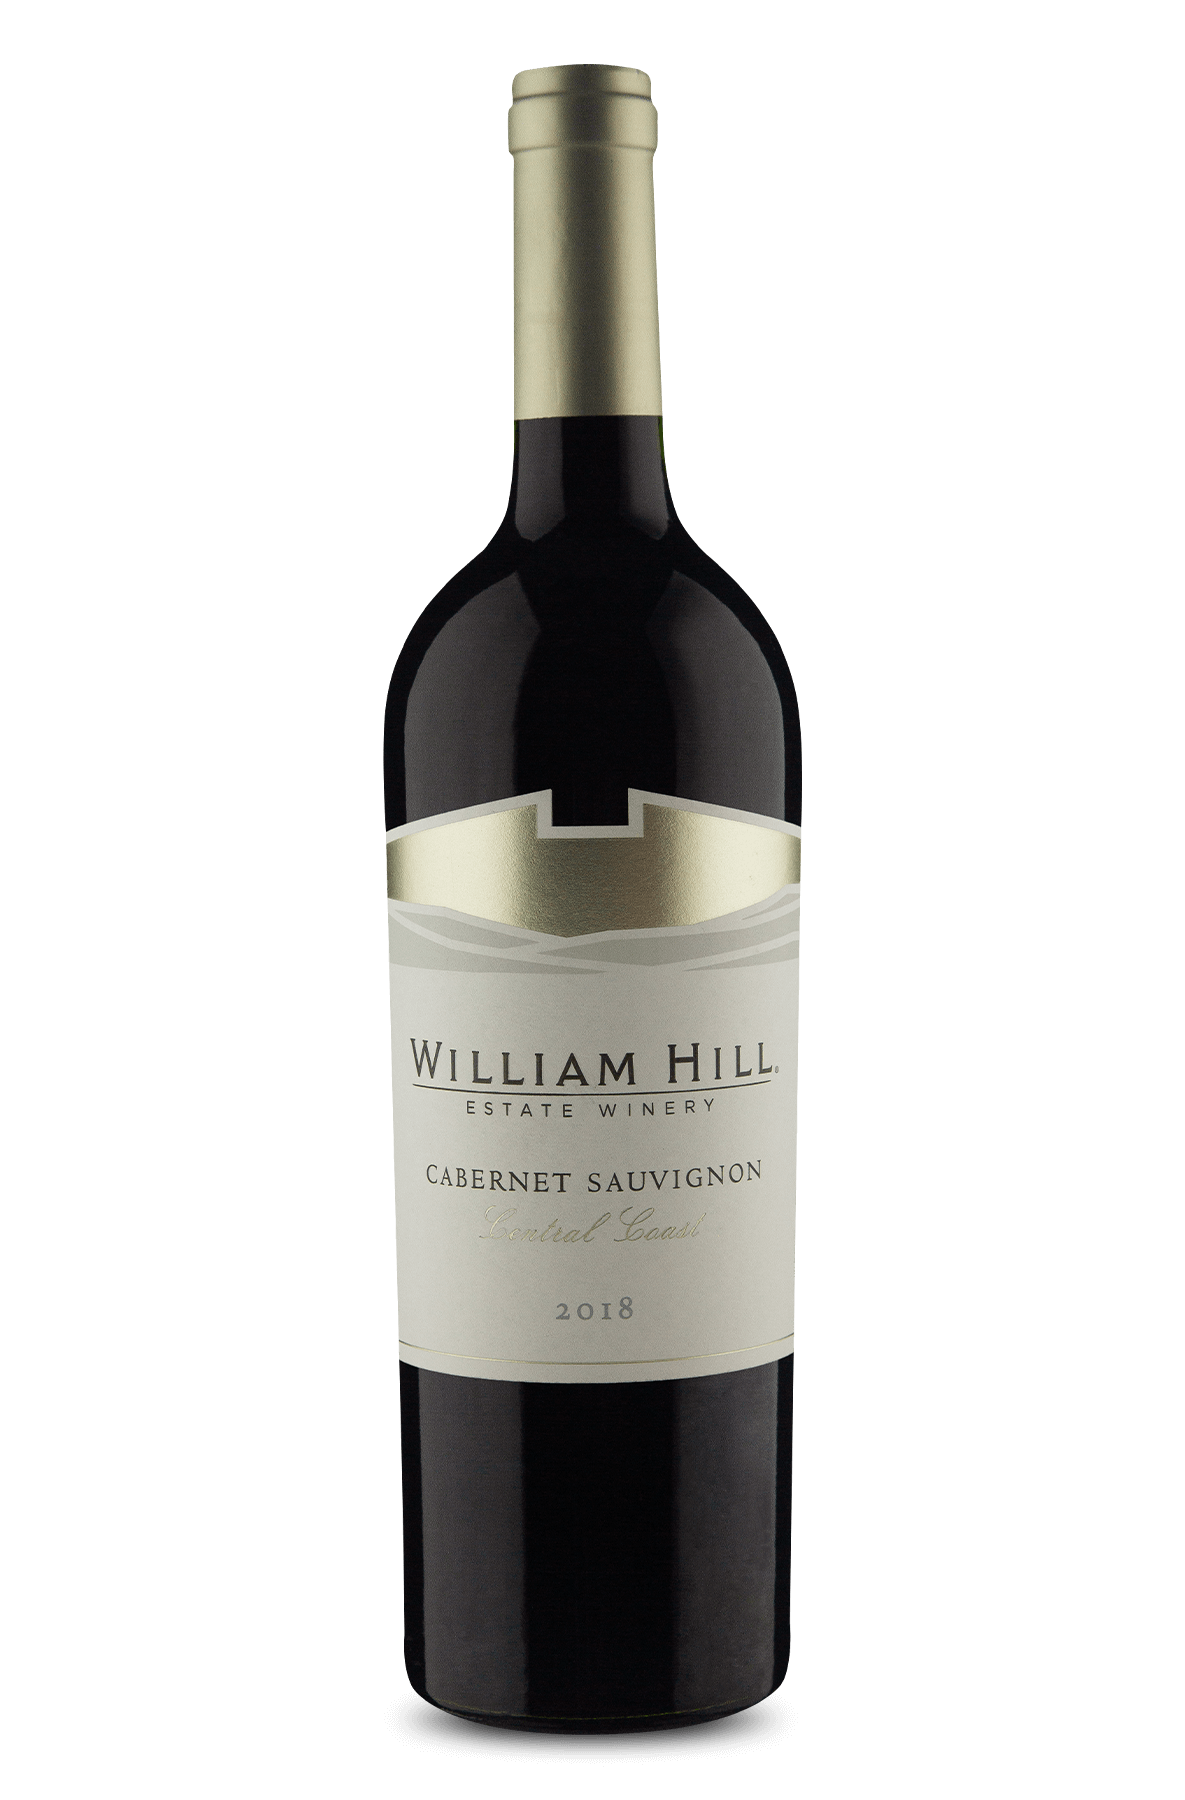 william hill sauvignon blanc reviews